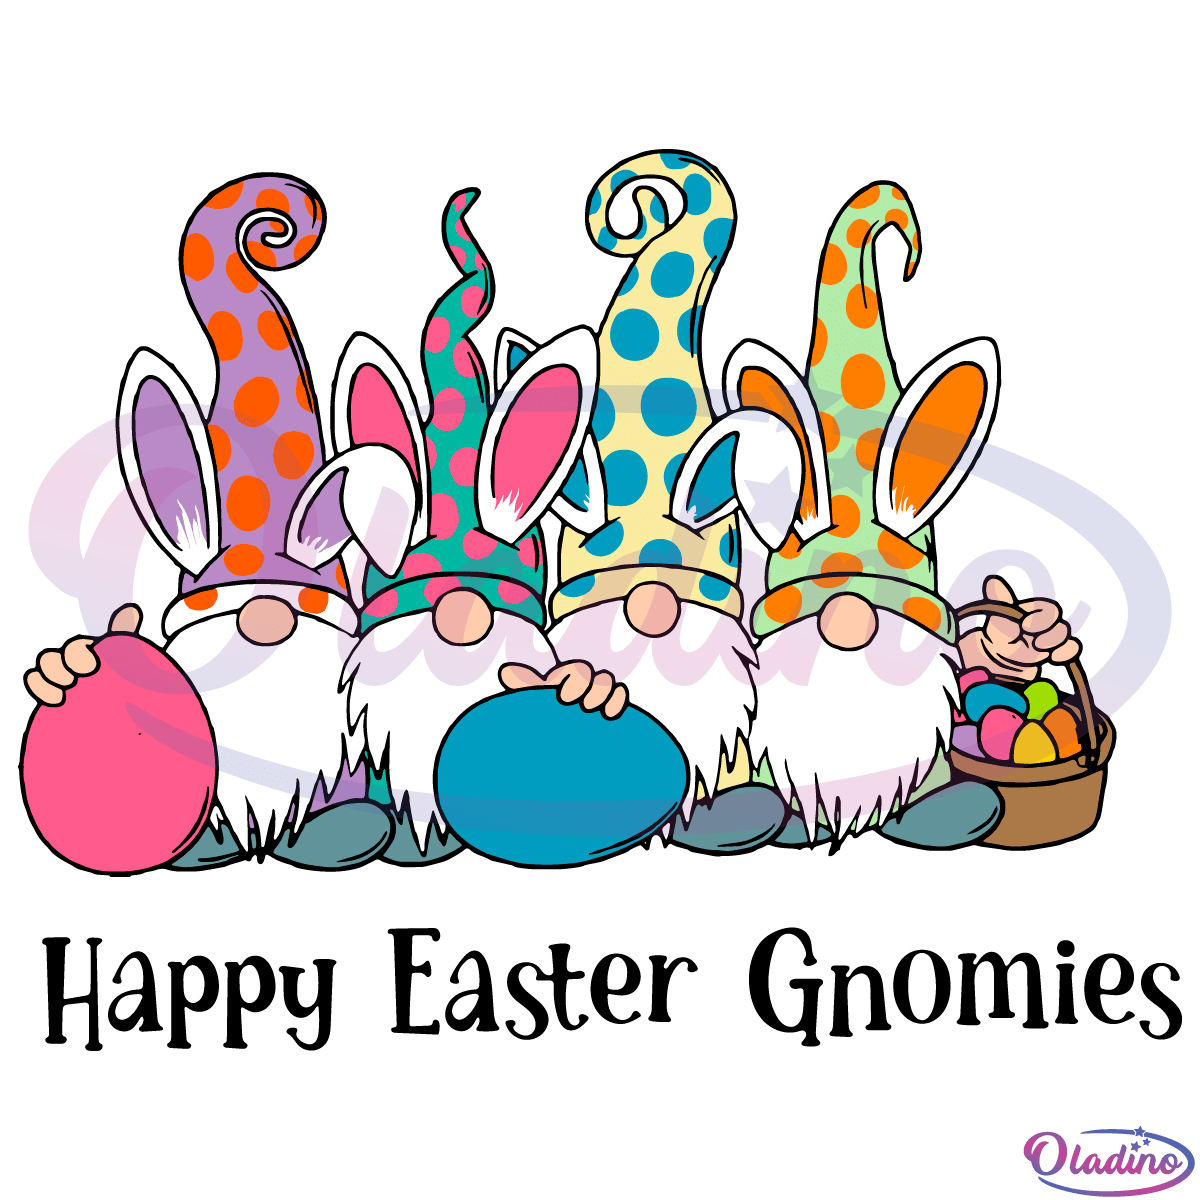 Easter Gnomes SVG Digital File, Easter Svg, Happy Easter Gnomies Svg